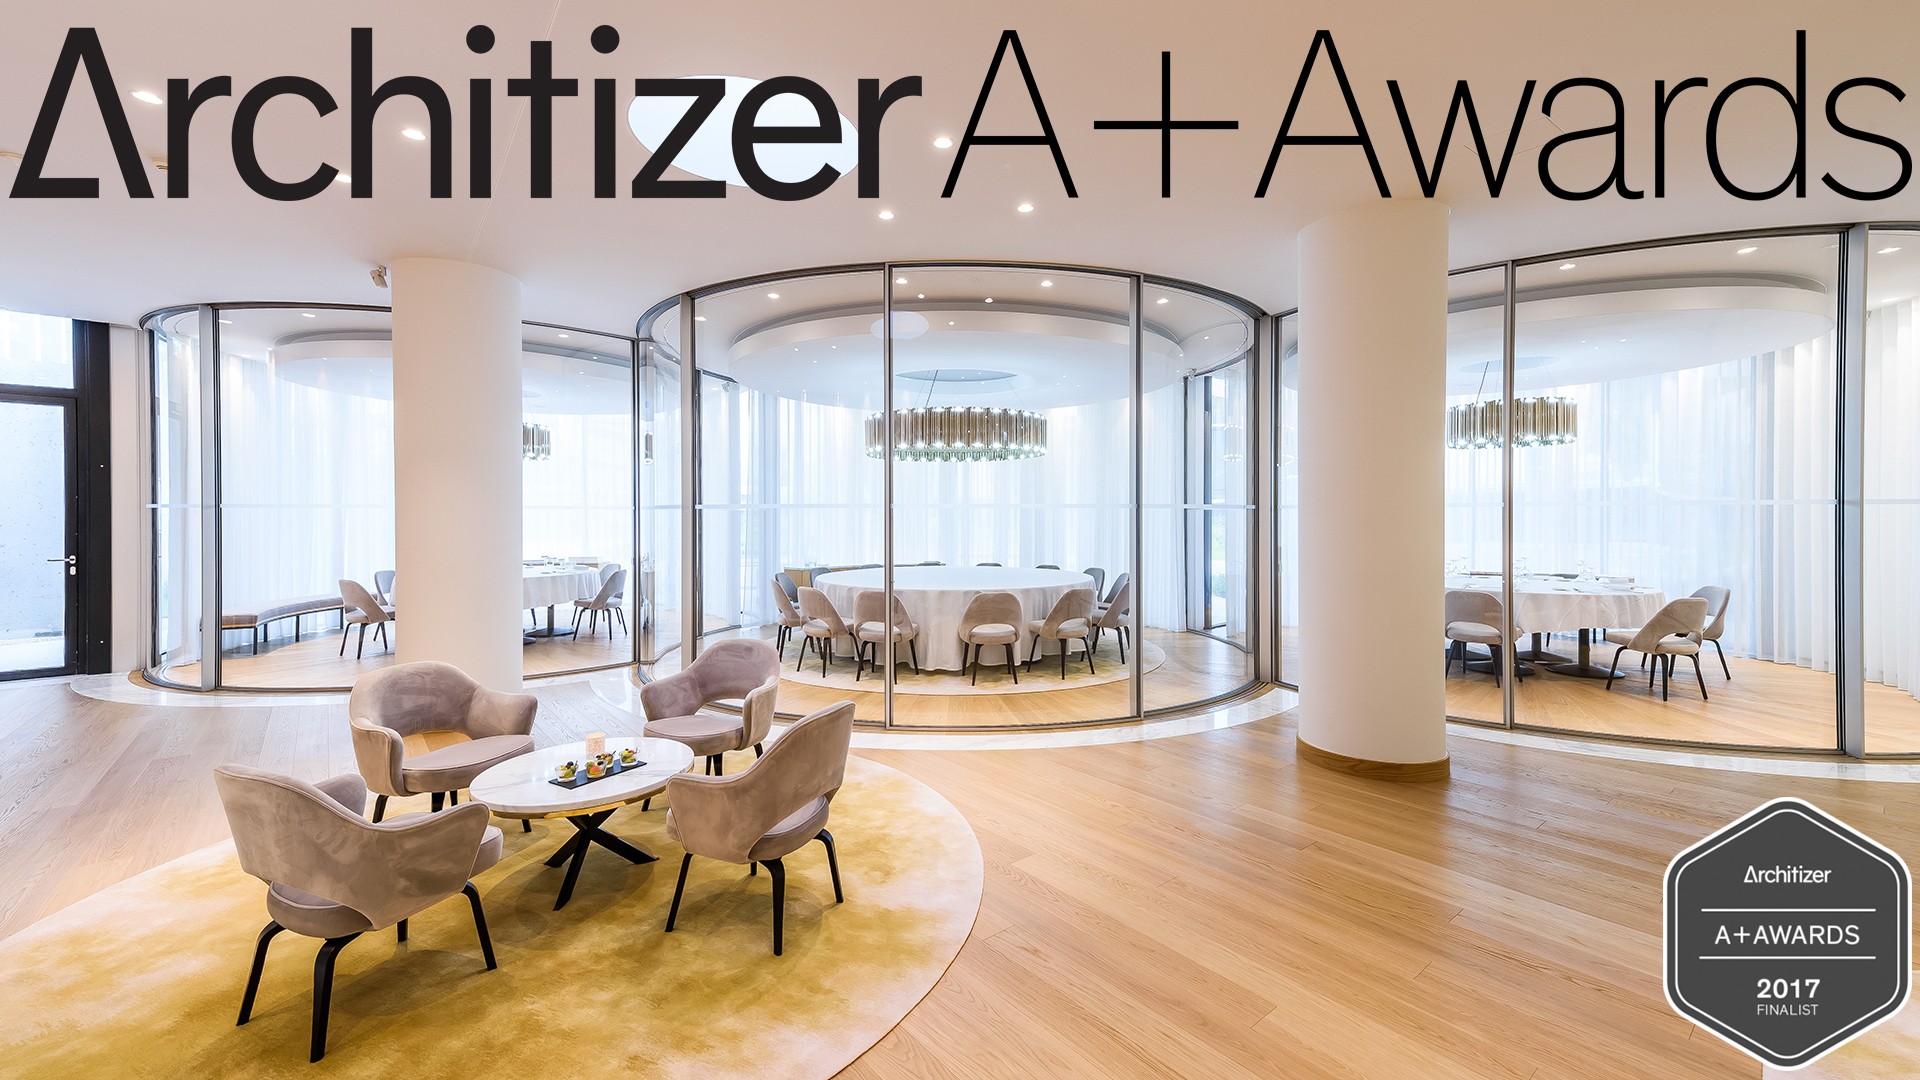 Architizer A+Awards 2017 | Vitrocsa Latest News